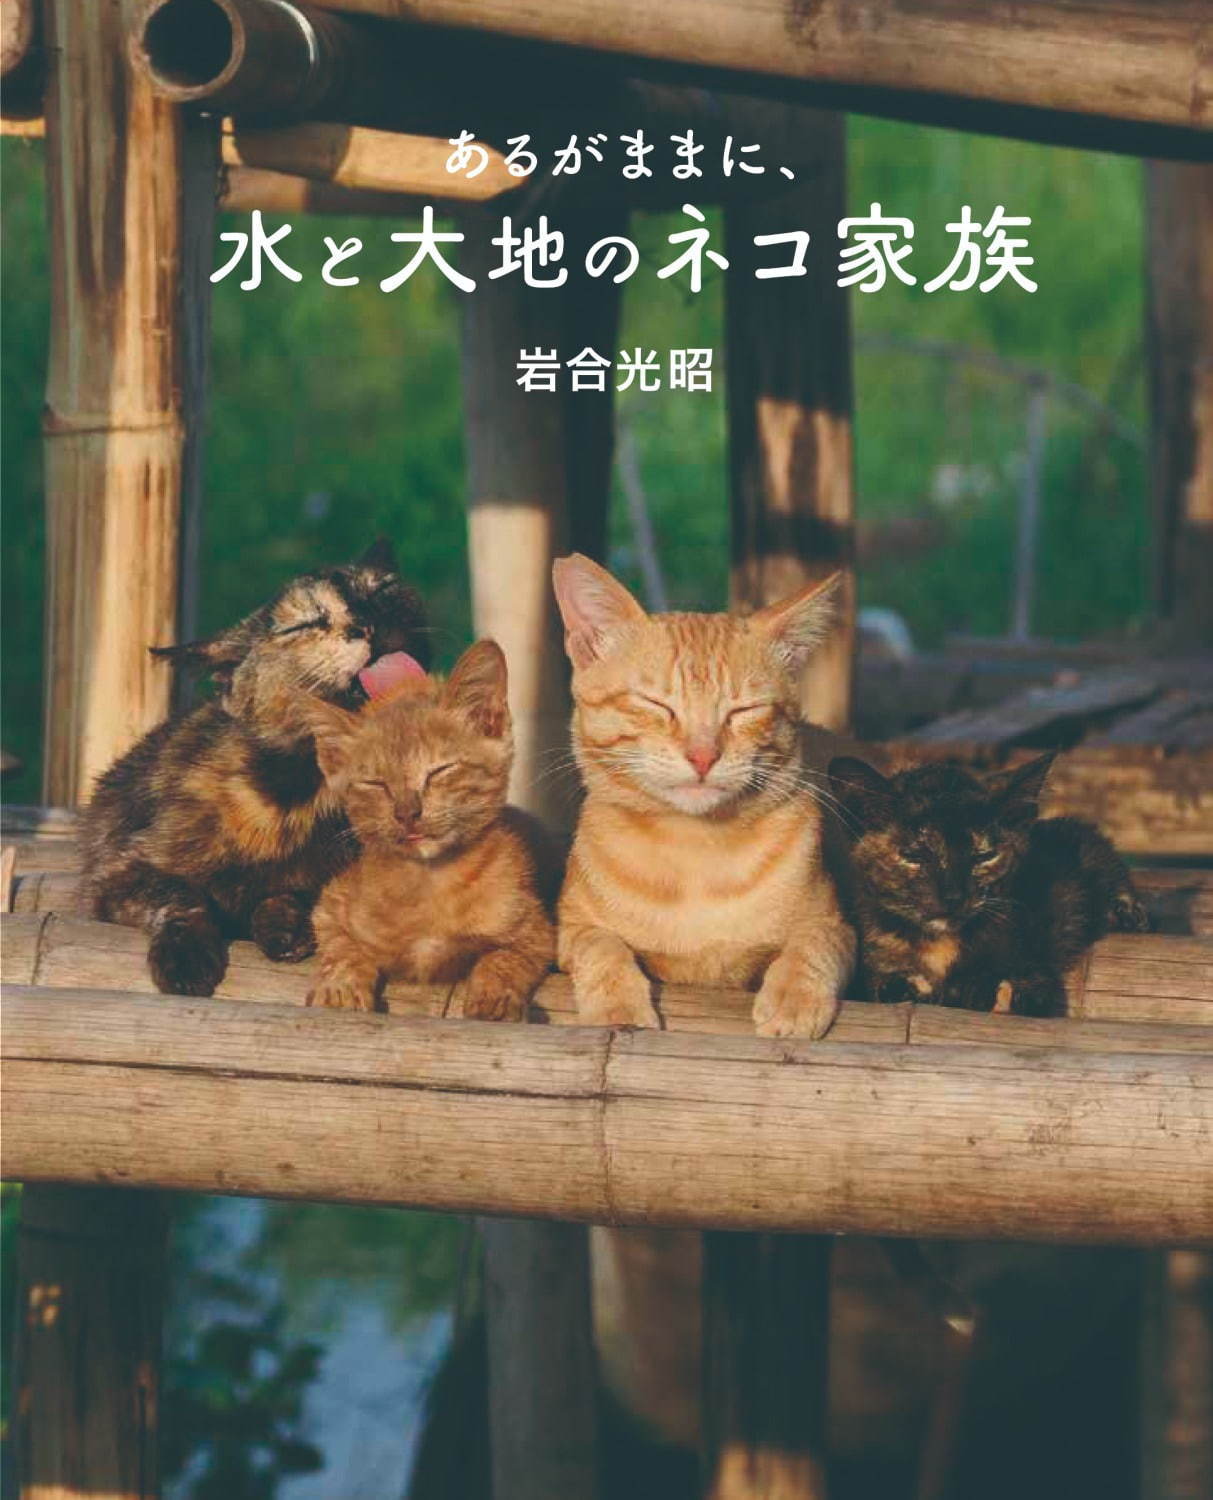 劇場版 岩合光昭の世界ネコ歩き あるがままに、水と大地のネコ家族 - 写真13